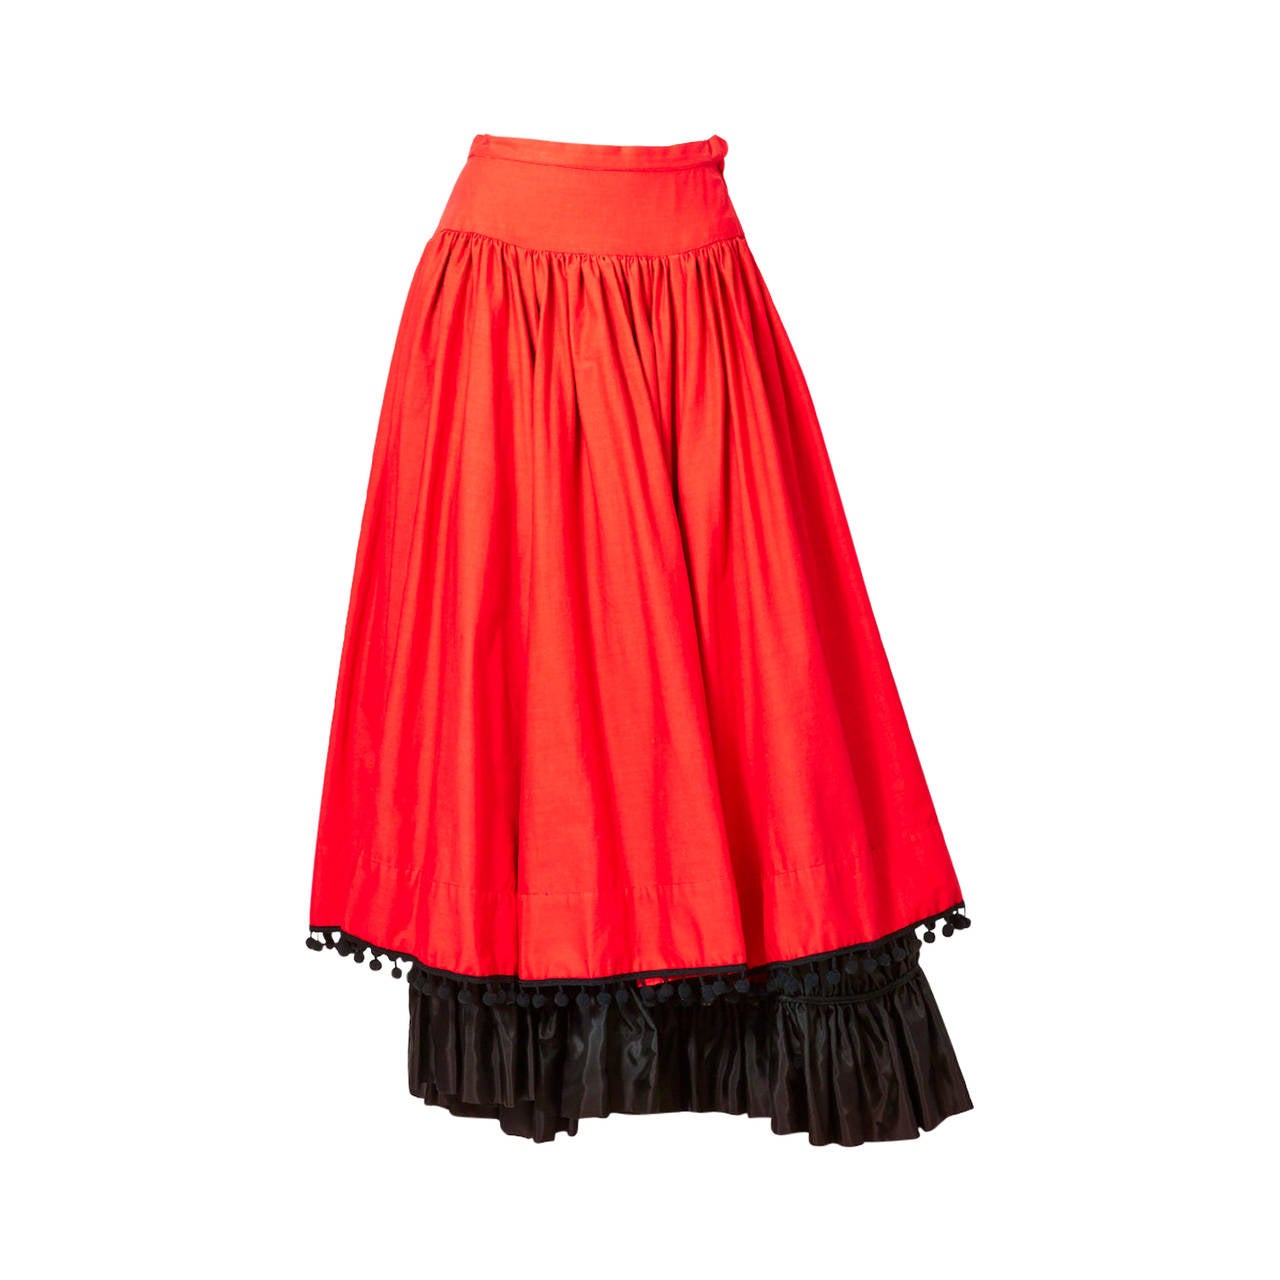 Yves Saint Laurent"Gypsy" Skirt